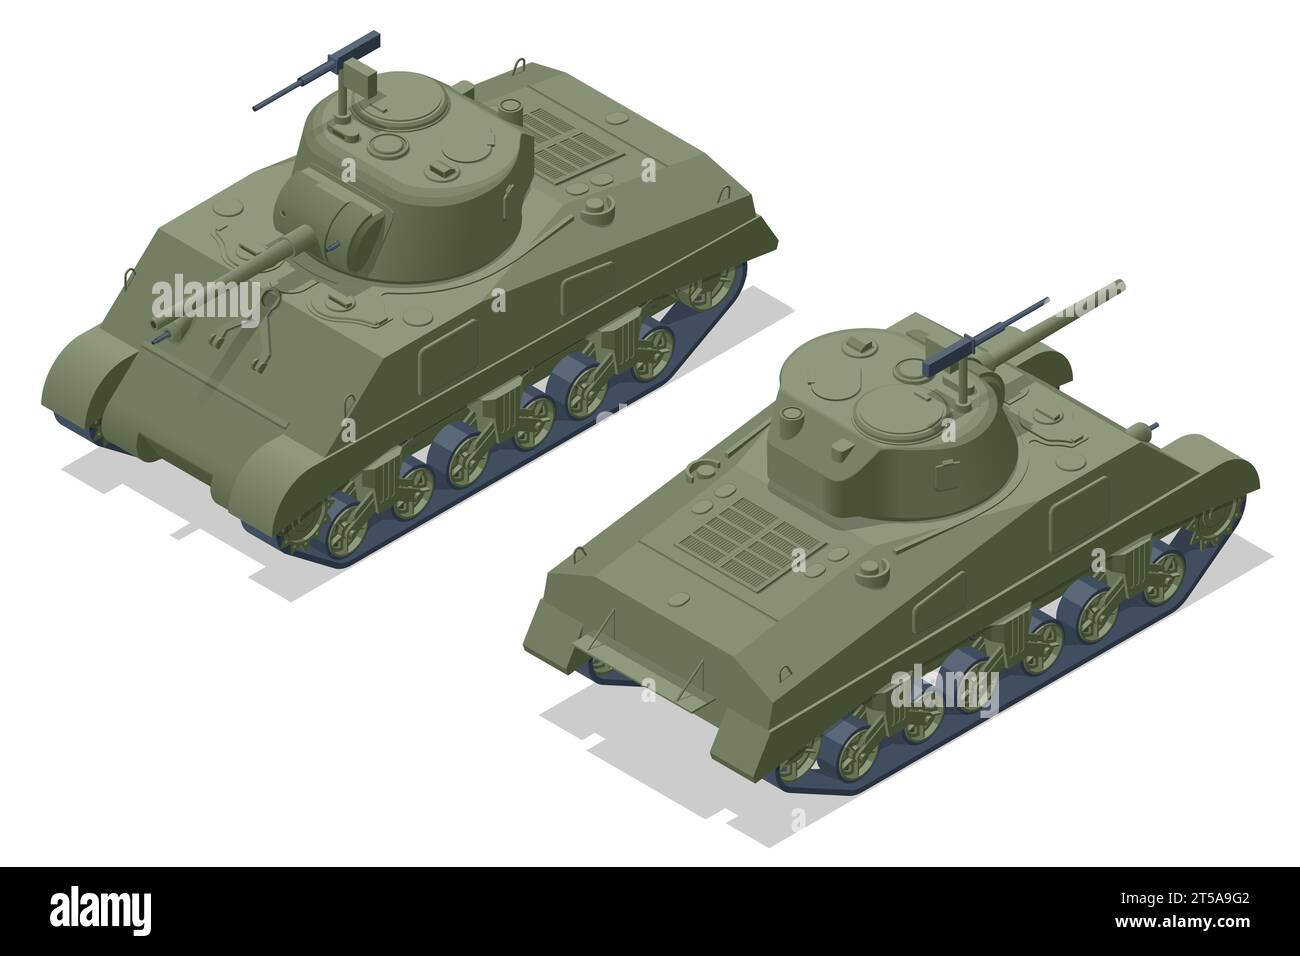 Réservoir moyen américain isométrique M4 Sherman. Véhicule blindé de combat conçu pour le combat de première ligne, avec une forte puissance de feu Illustration de Vecteur